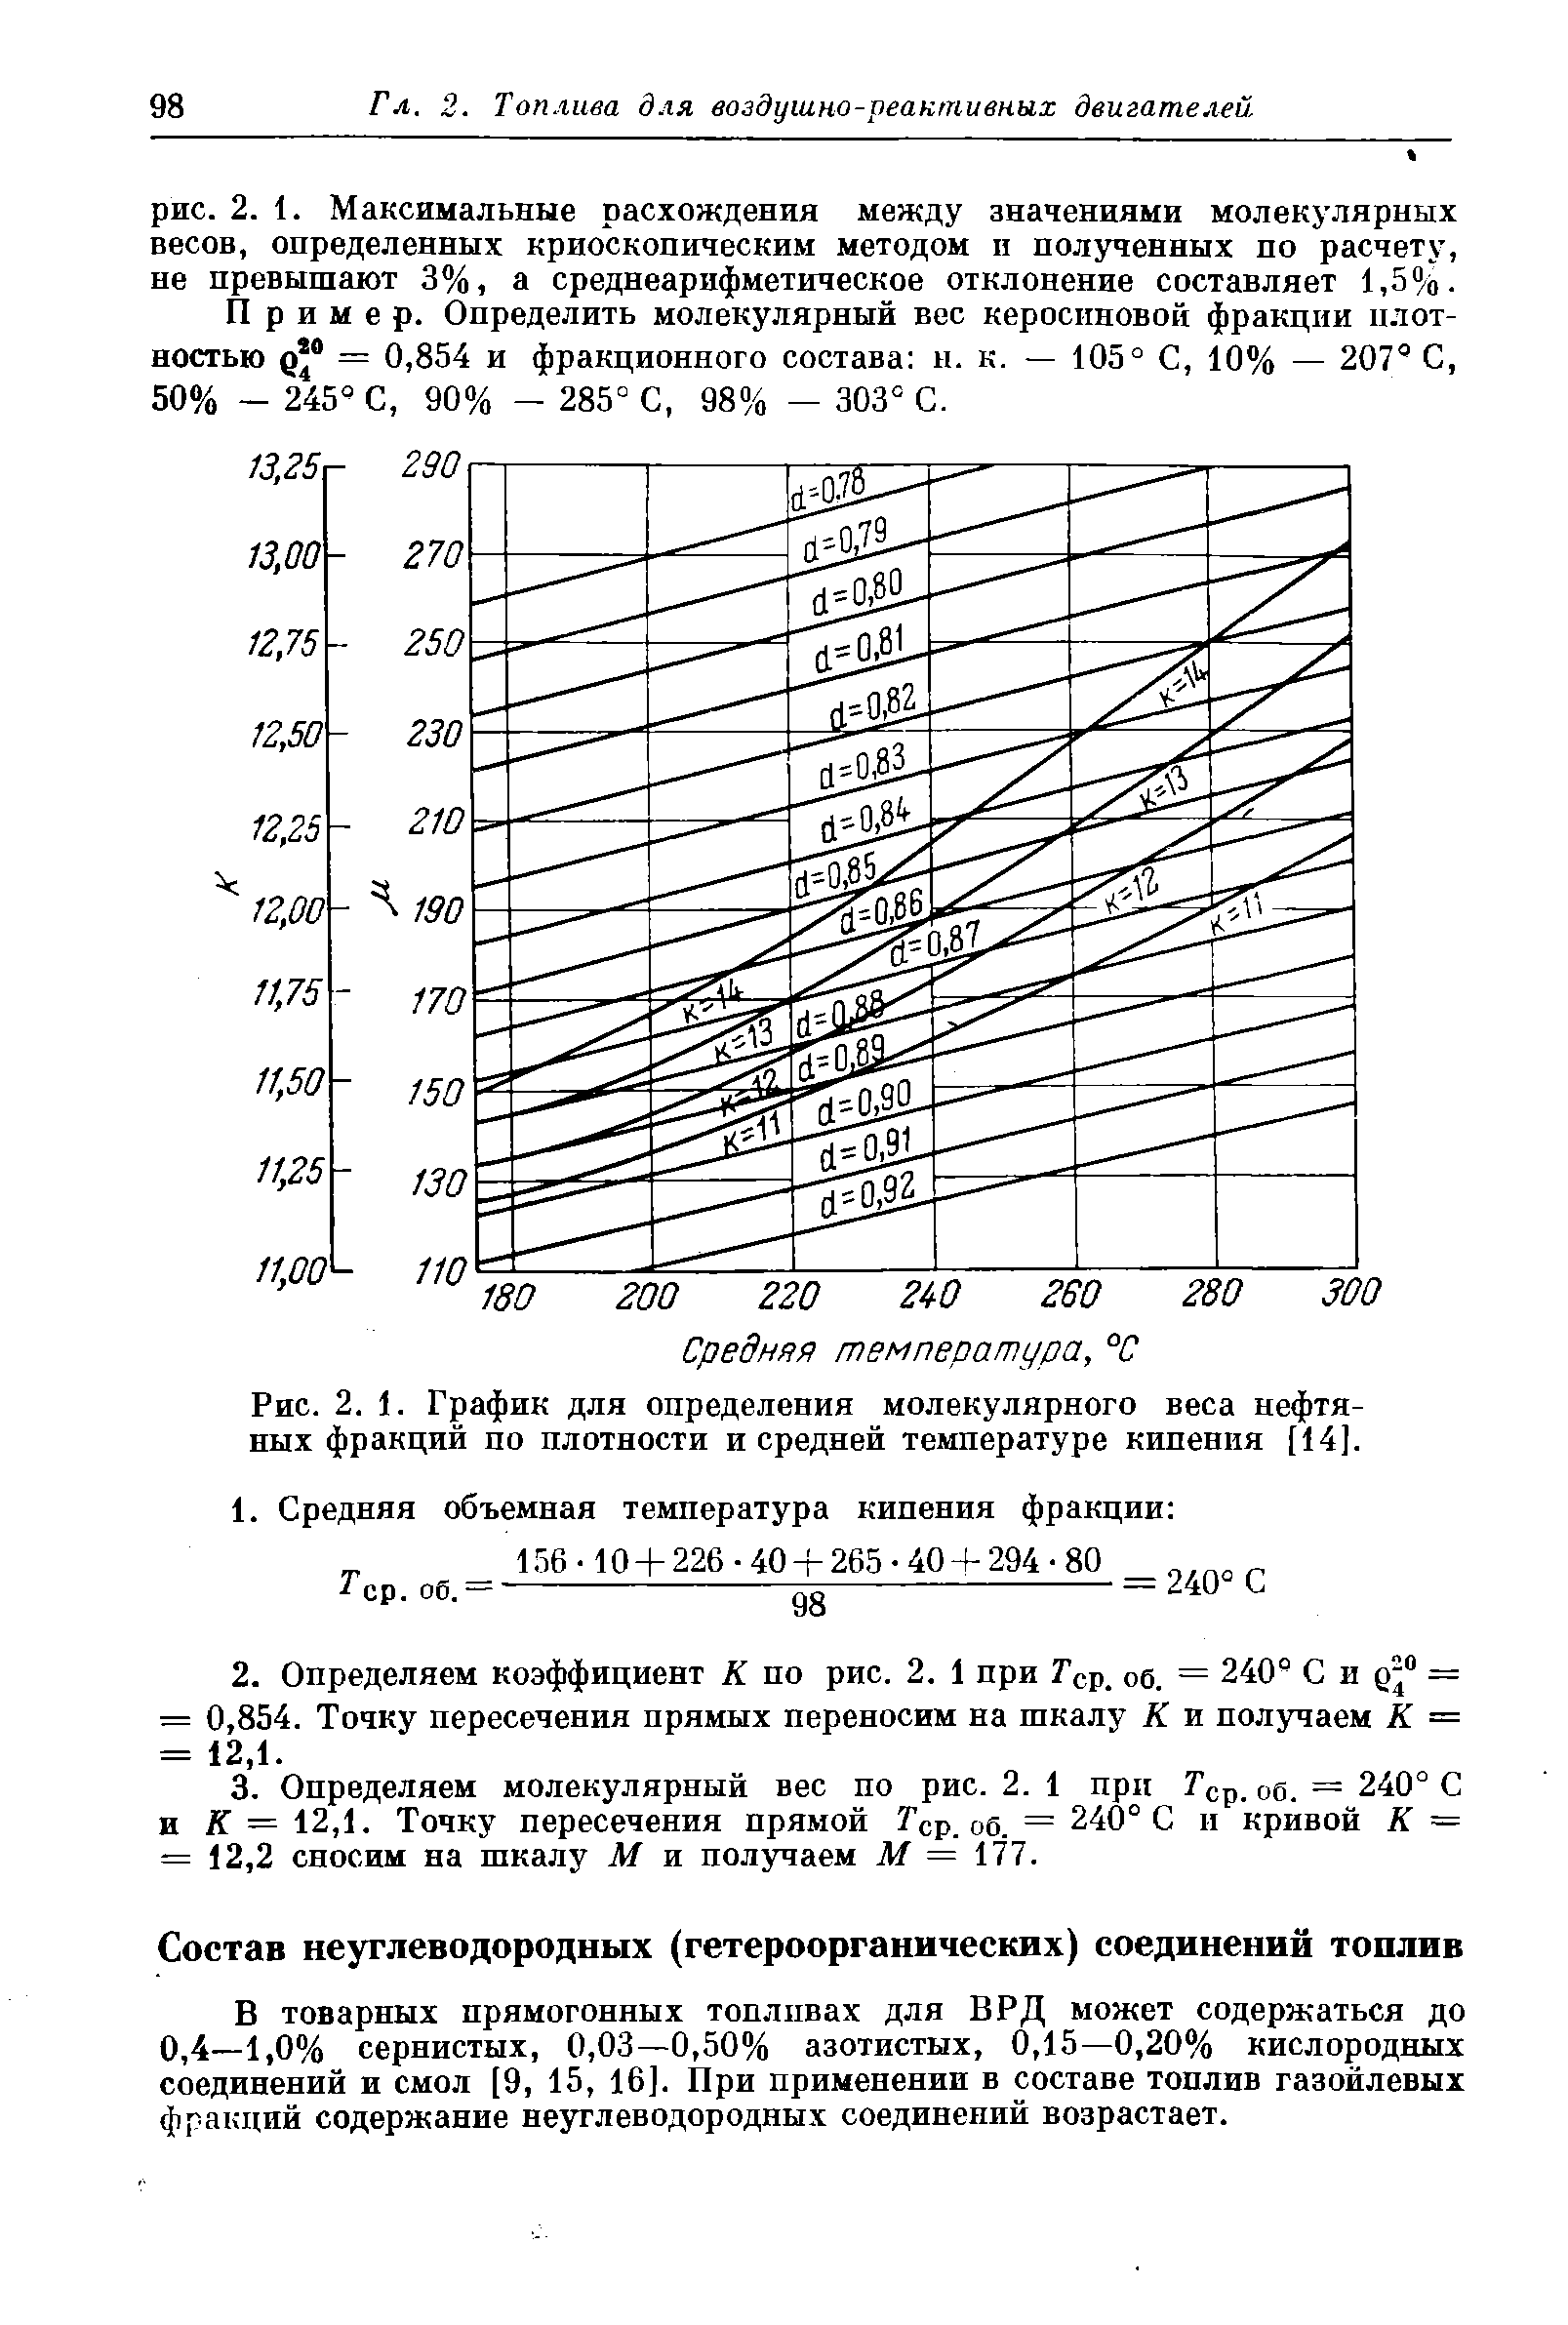 В товарных прямогонных топливах для ВРД может содержаться до 0,4—1,0% сернистых, 0,03—0,50% азотистых, 0,15—0,20% кислородных соединений и смол [9, 15, 16]. При применении в составе топлив газойлевых фракций содержание неуглеводородных соединений возрастает.